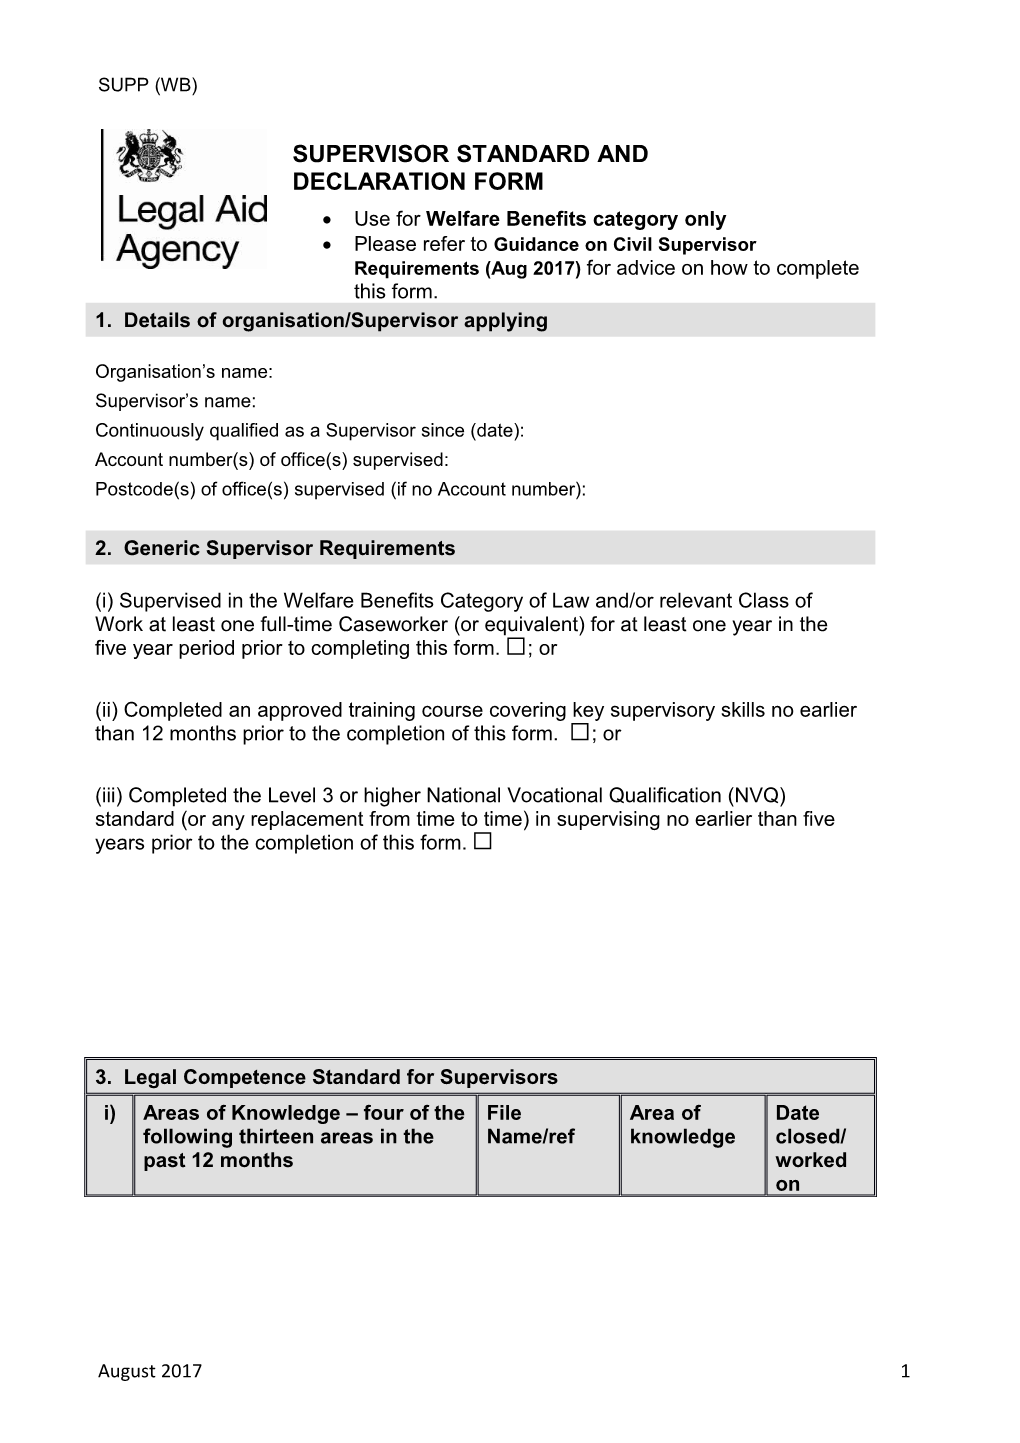 Supervisor Standard and Declaration Form